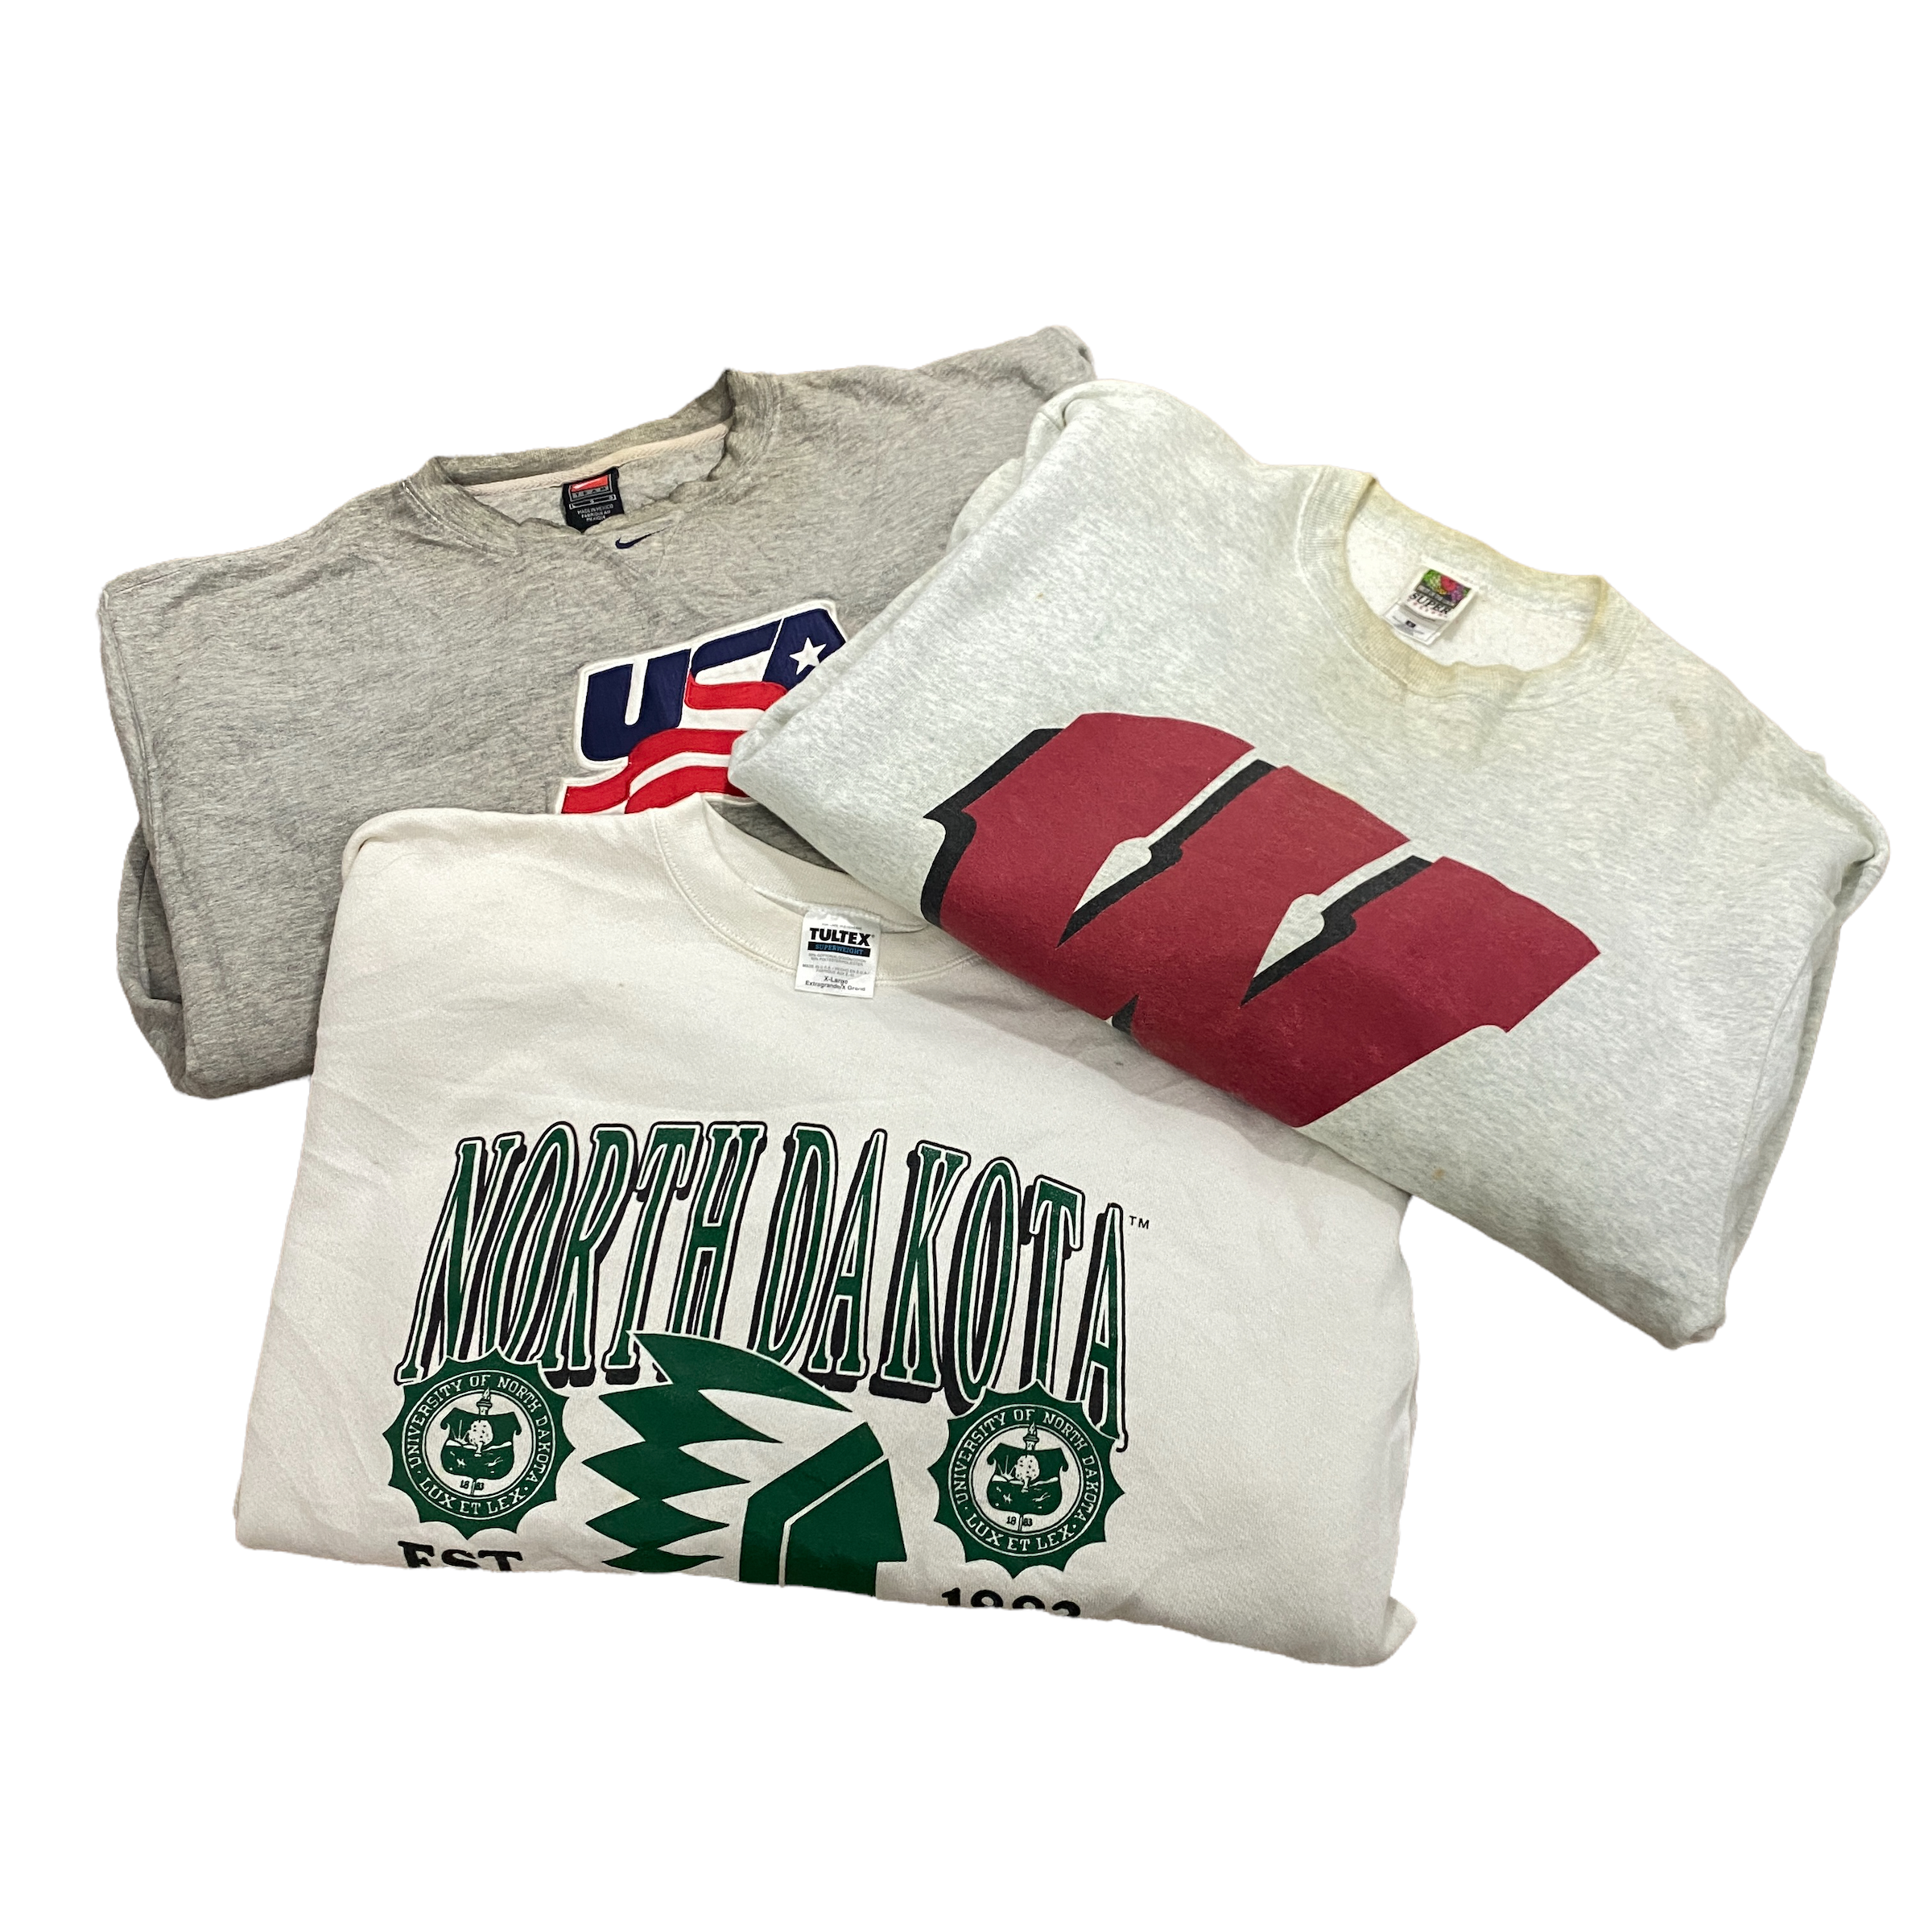 Wholesale Vintage B/C Grade Sweatshirt 5-50 Pieces